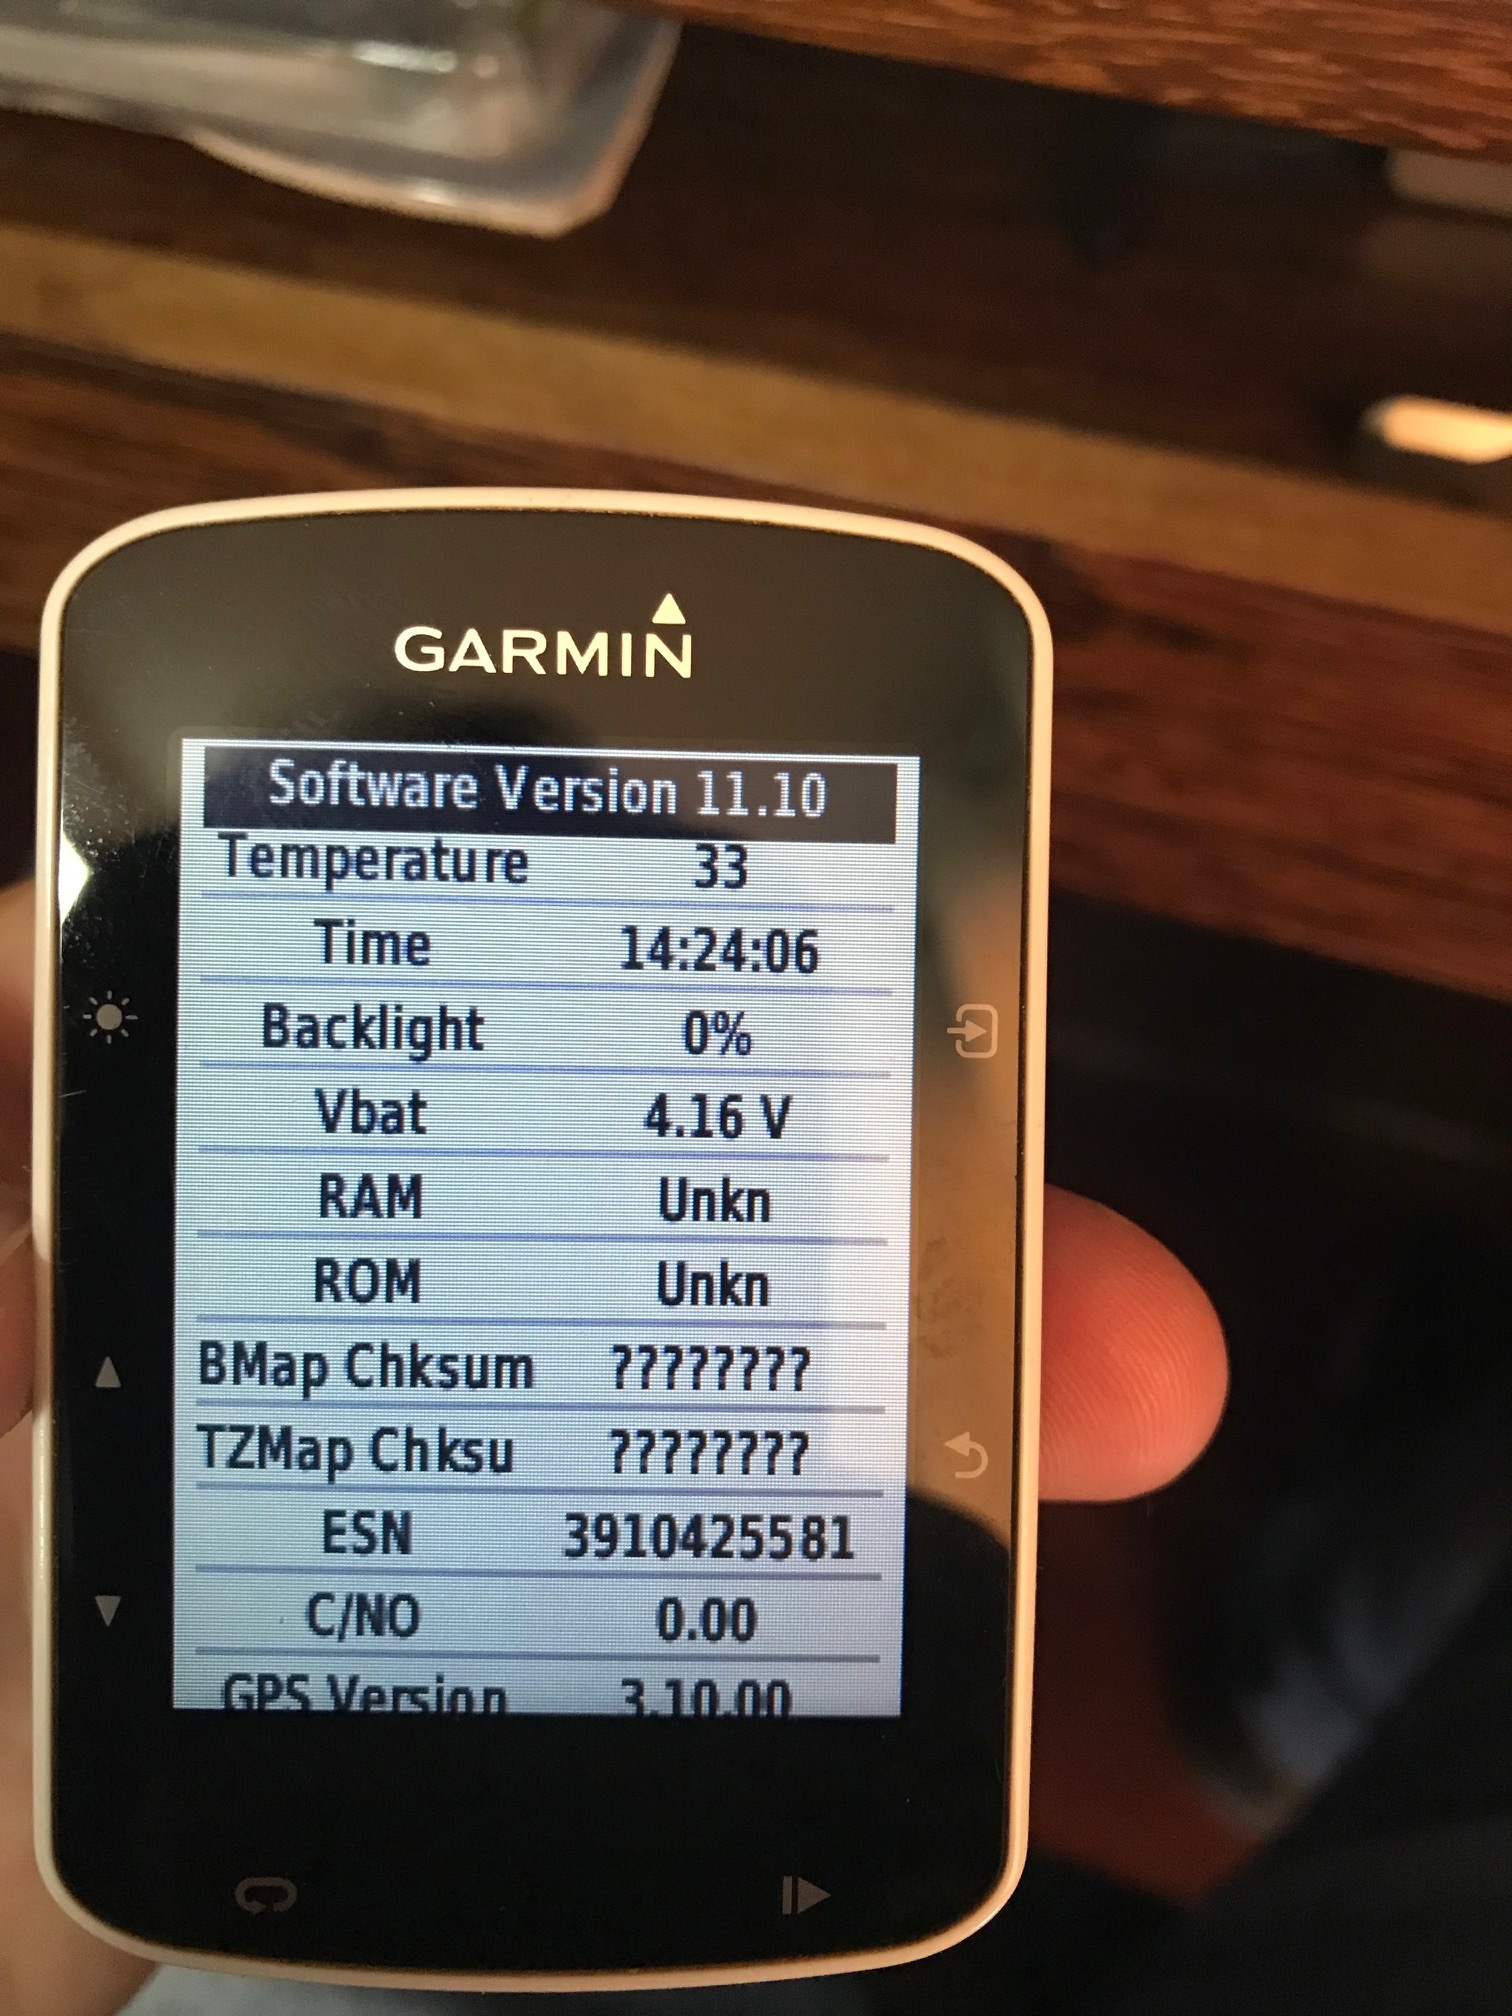 Garmin edge 520 memory / rom unknown and baseman checksum test fail - Edge 520/520 Plus - Cycling - Garmin Forums